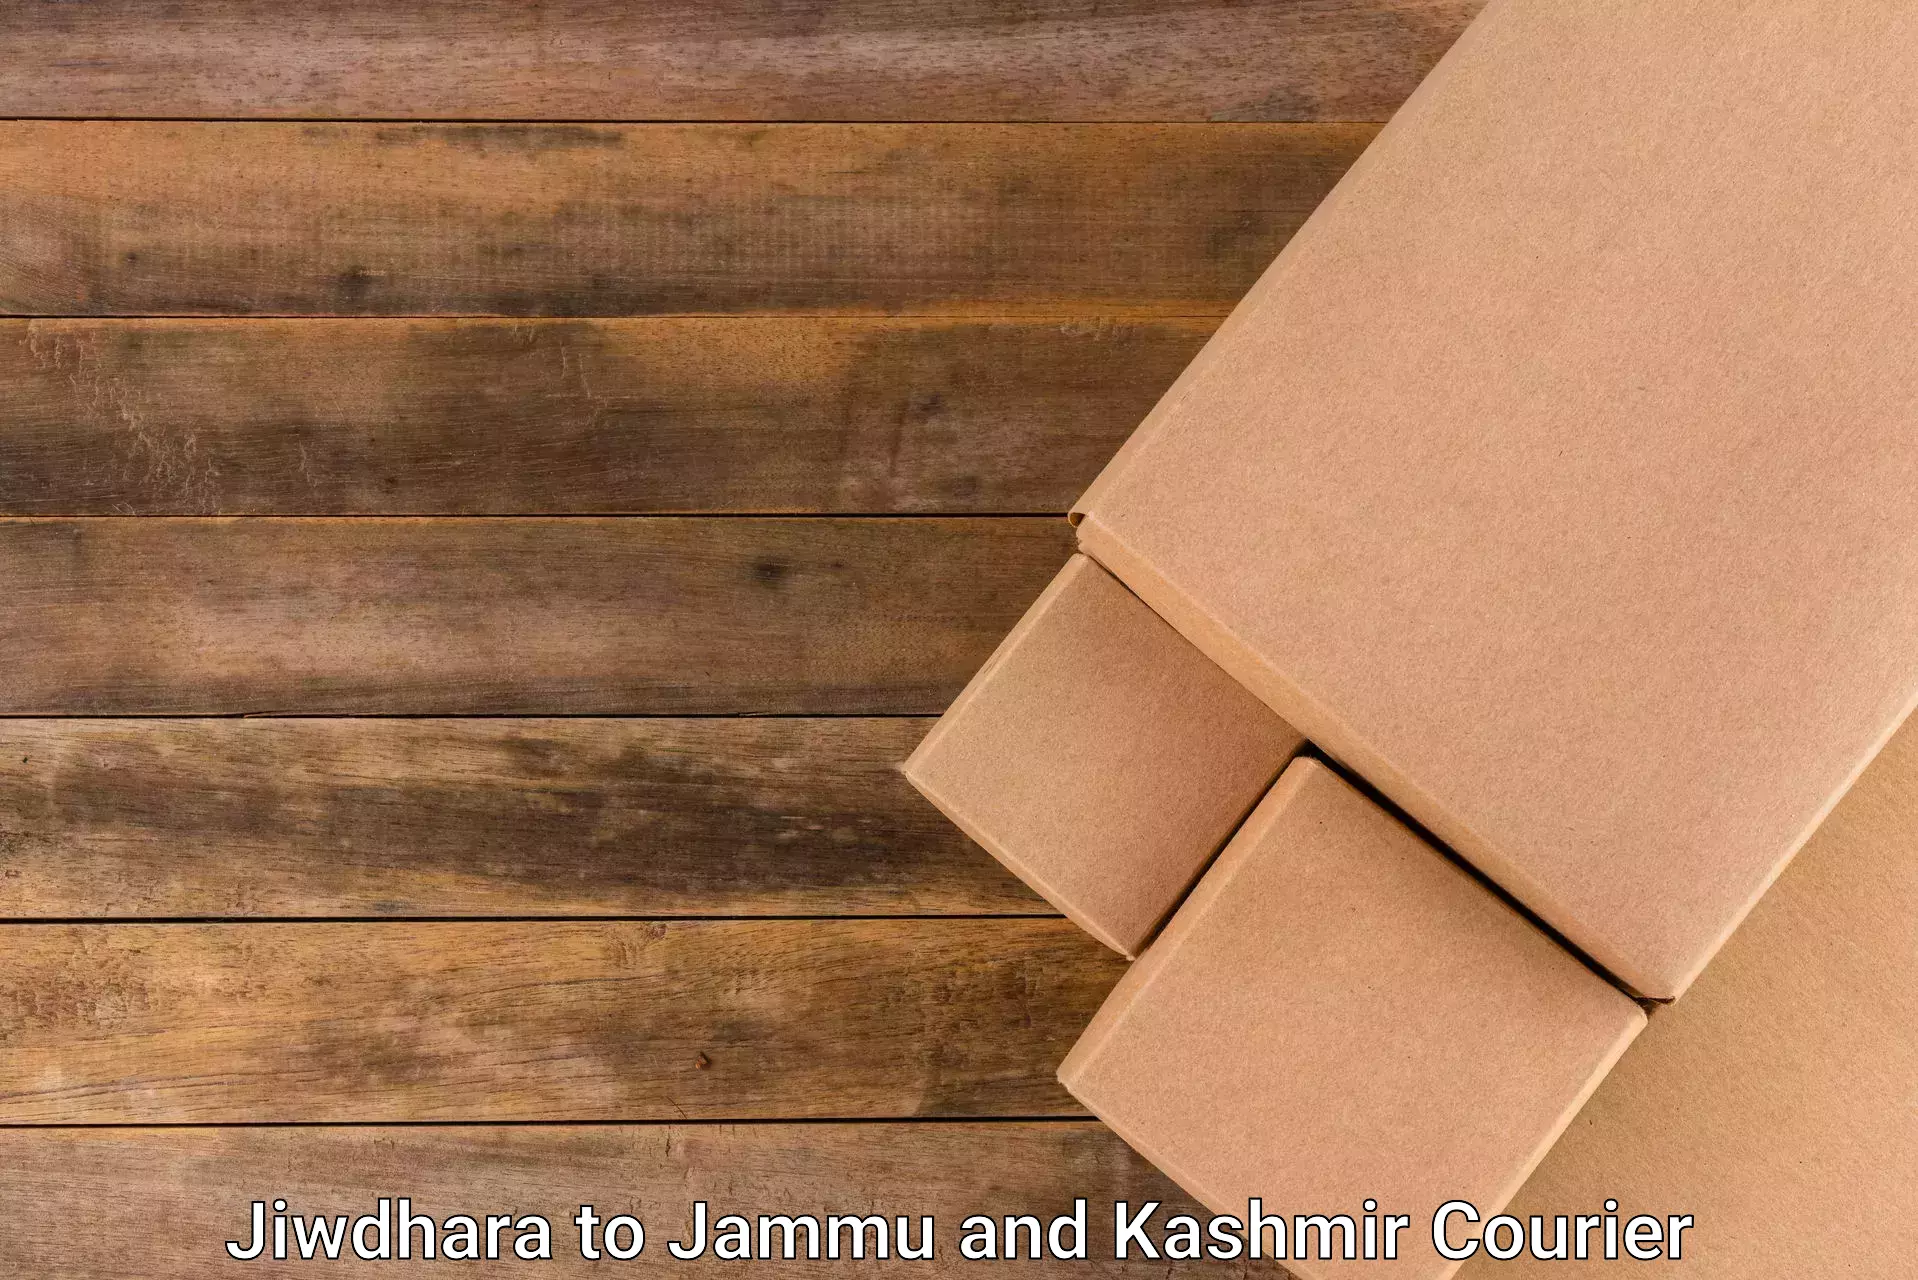 Global shipping networks Jiwdhara to Jammu and Kashmir